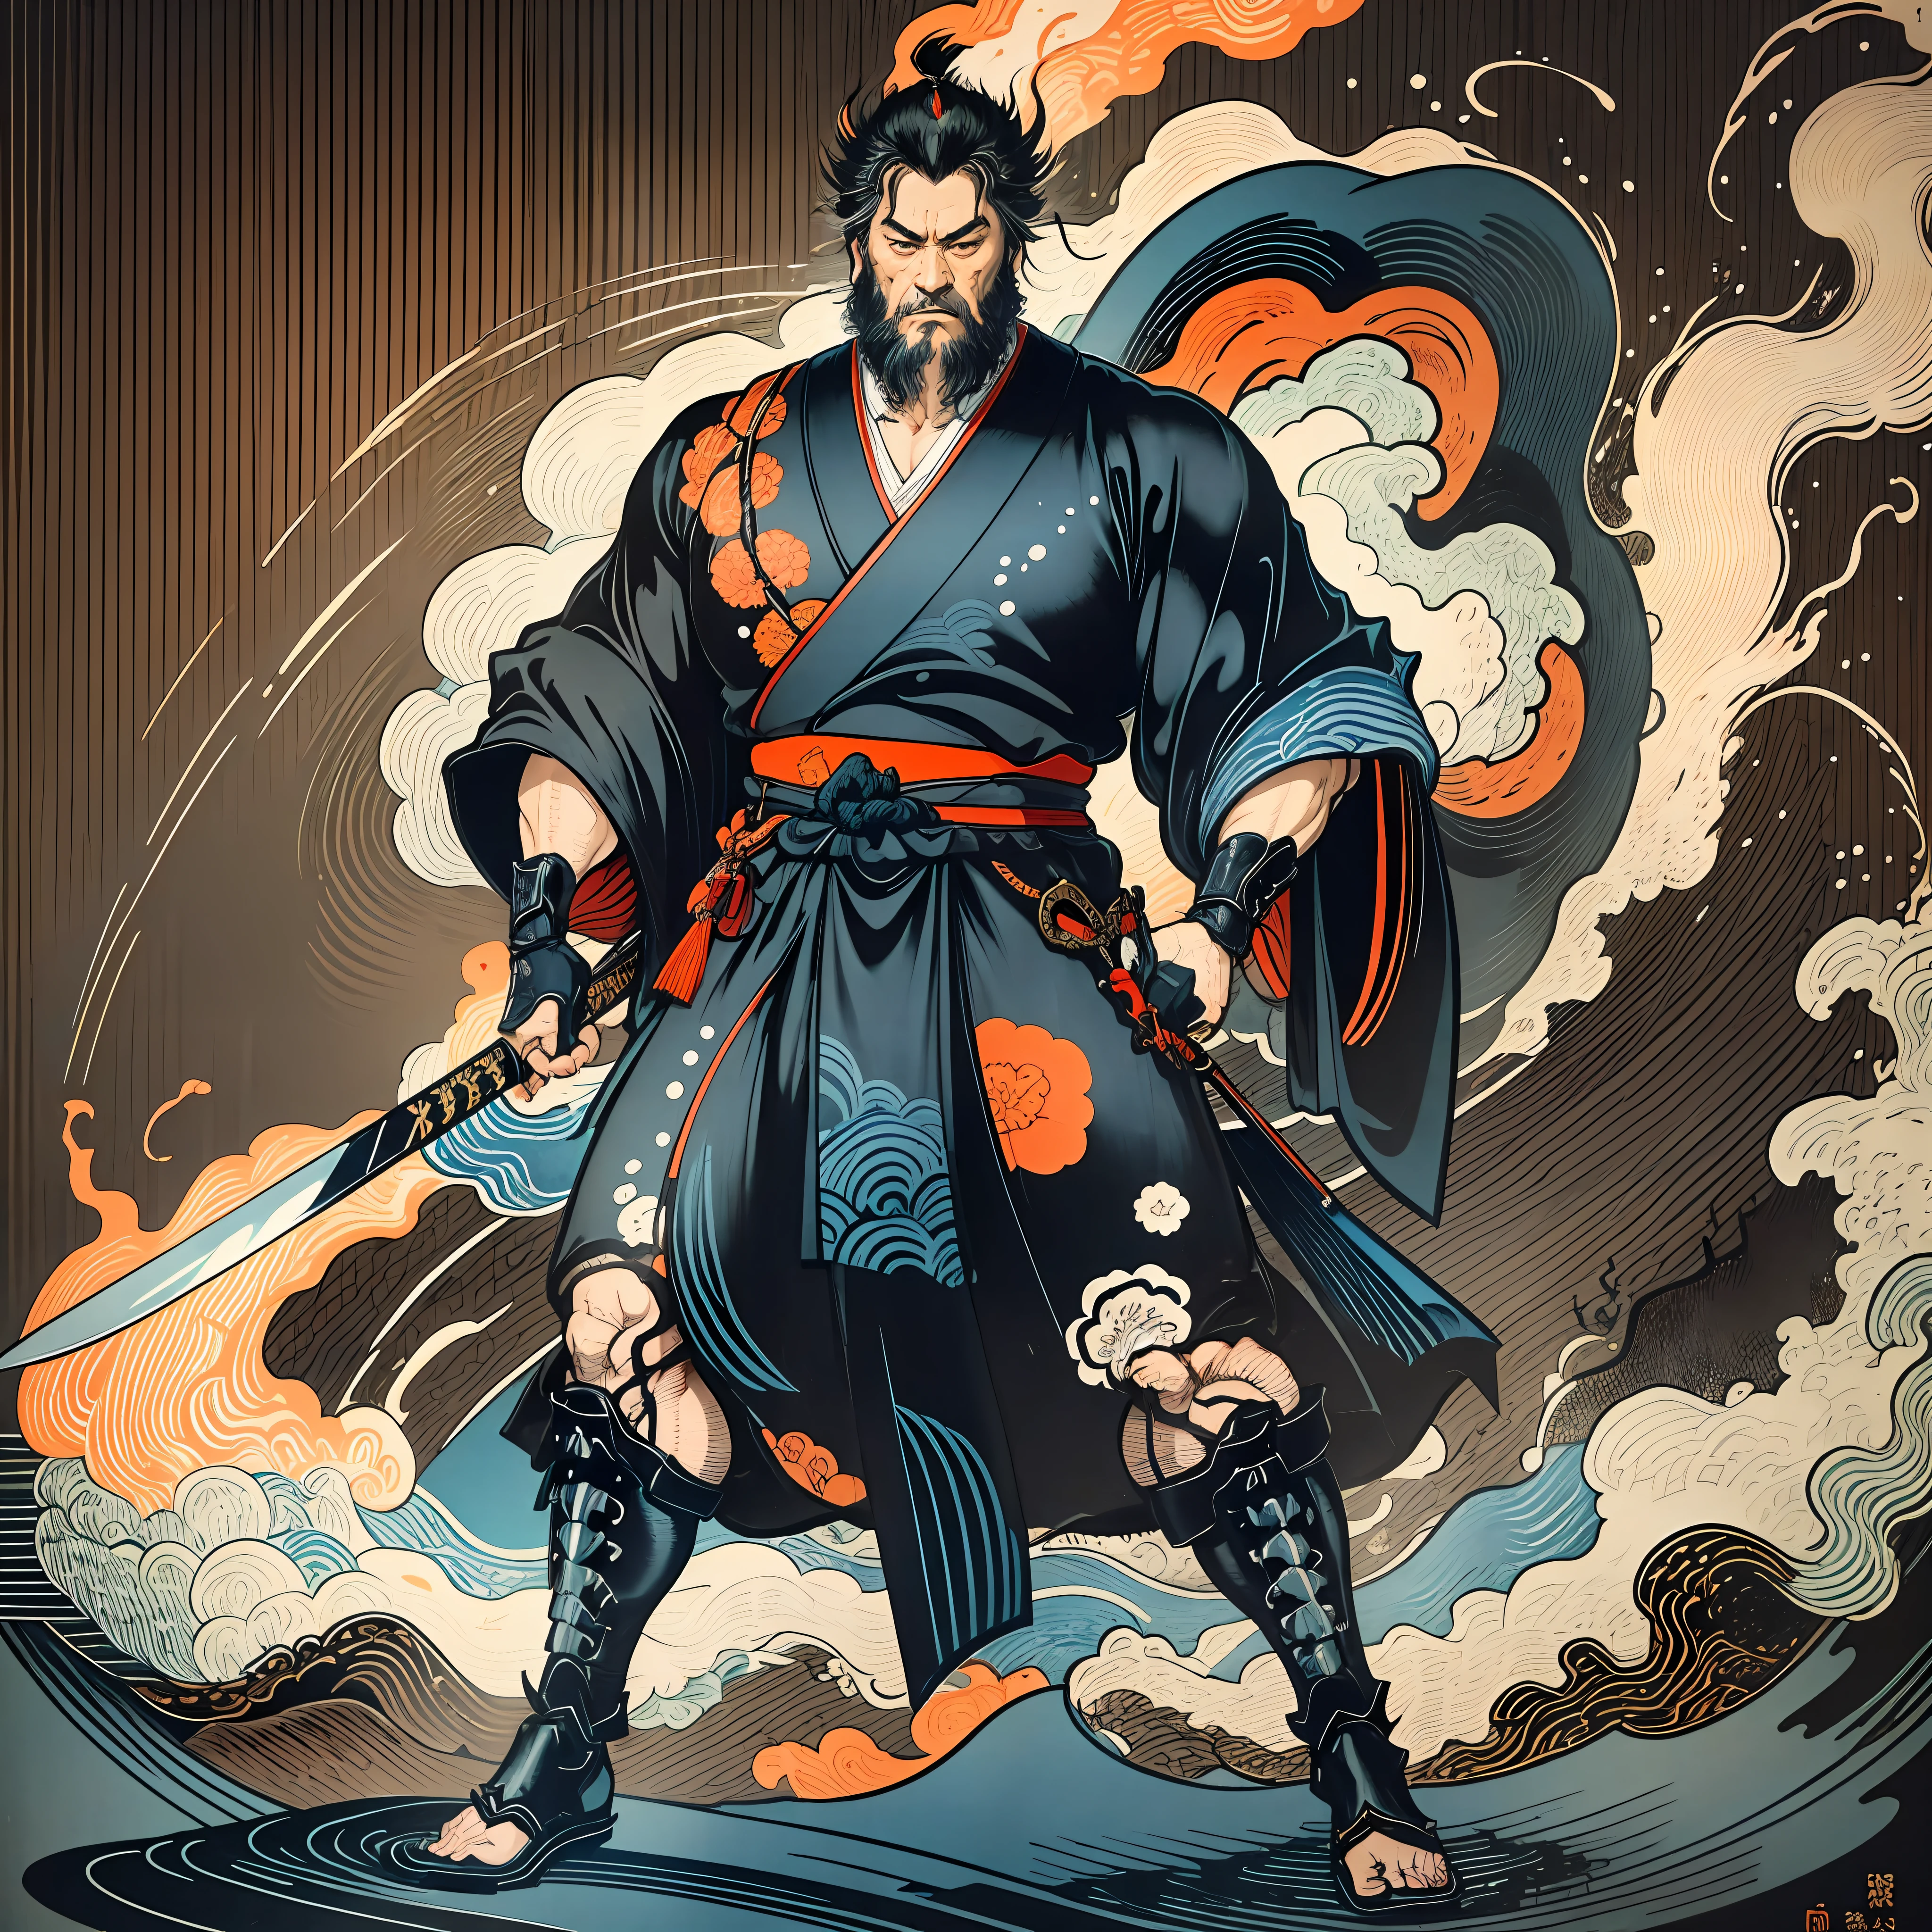 Es una pintura de cuerpo entero con colores naturales con dibujos lineales al estilo Katsushika Hokusai.. El espadachín Miyamoto Musashi tiene un cuerpo grande como el de un hombre fuerte.. Samurái de Japón. Tiene una expresión de determinación digna pero varonil., Pelo negro corto, y un corto, barba recortada. La parte superior de su cuerpo está cubierta con un kimono negro y su hakama llega hasta las rodillas.. En su mano derecha sostiene una espada japonesa.. en la más alta calidad, en alta resolución, estilo ukiyo-e, relámpagos y llamas arremolinadas de la obra maestra. Miyamoto Musashi está de pie con la cara y el cuerpo mirando hacia adelante., su espalda recta.